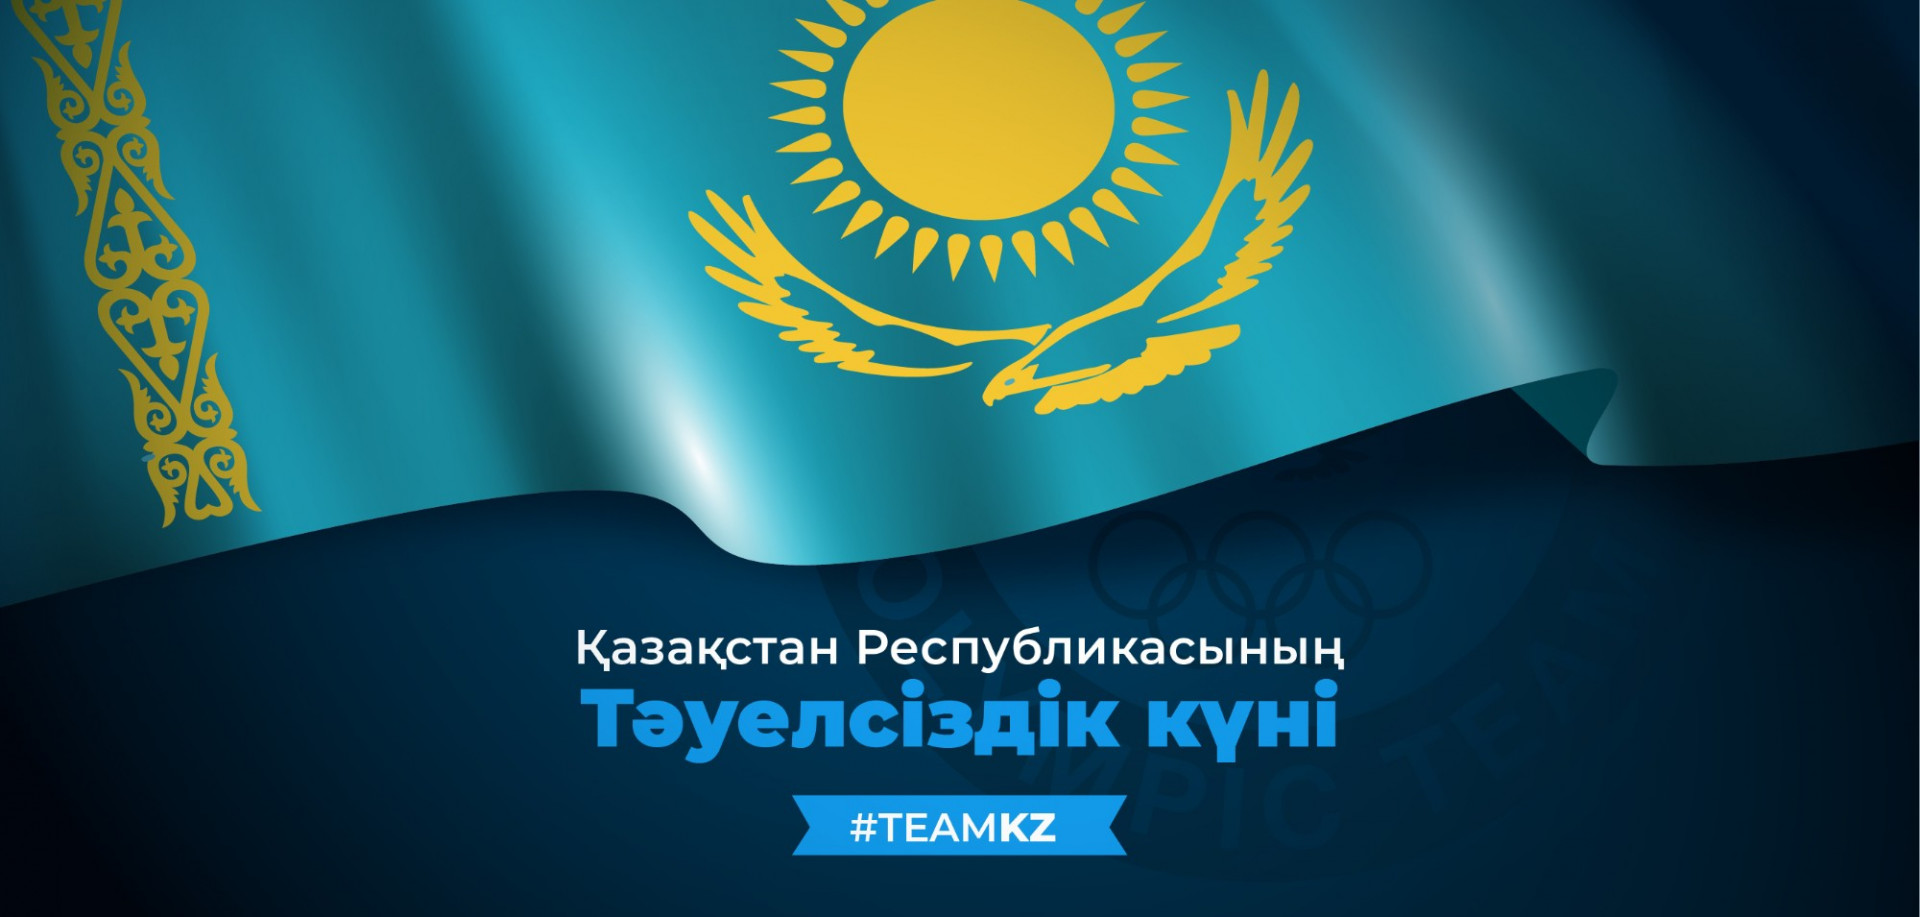 ҰОК президенті қазақстандықтарды Тәуелсіздік күнімен құттықтады 